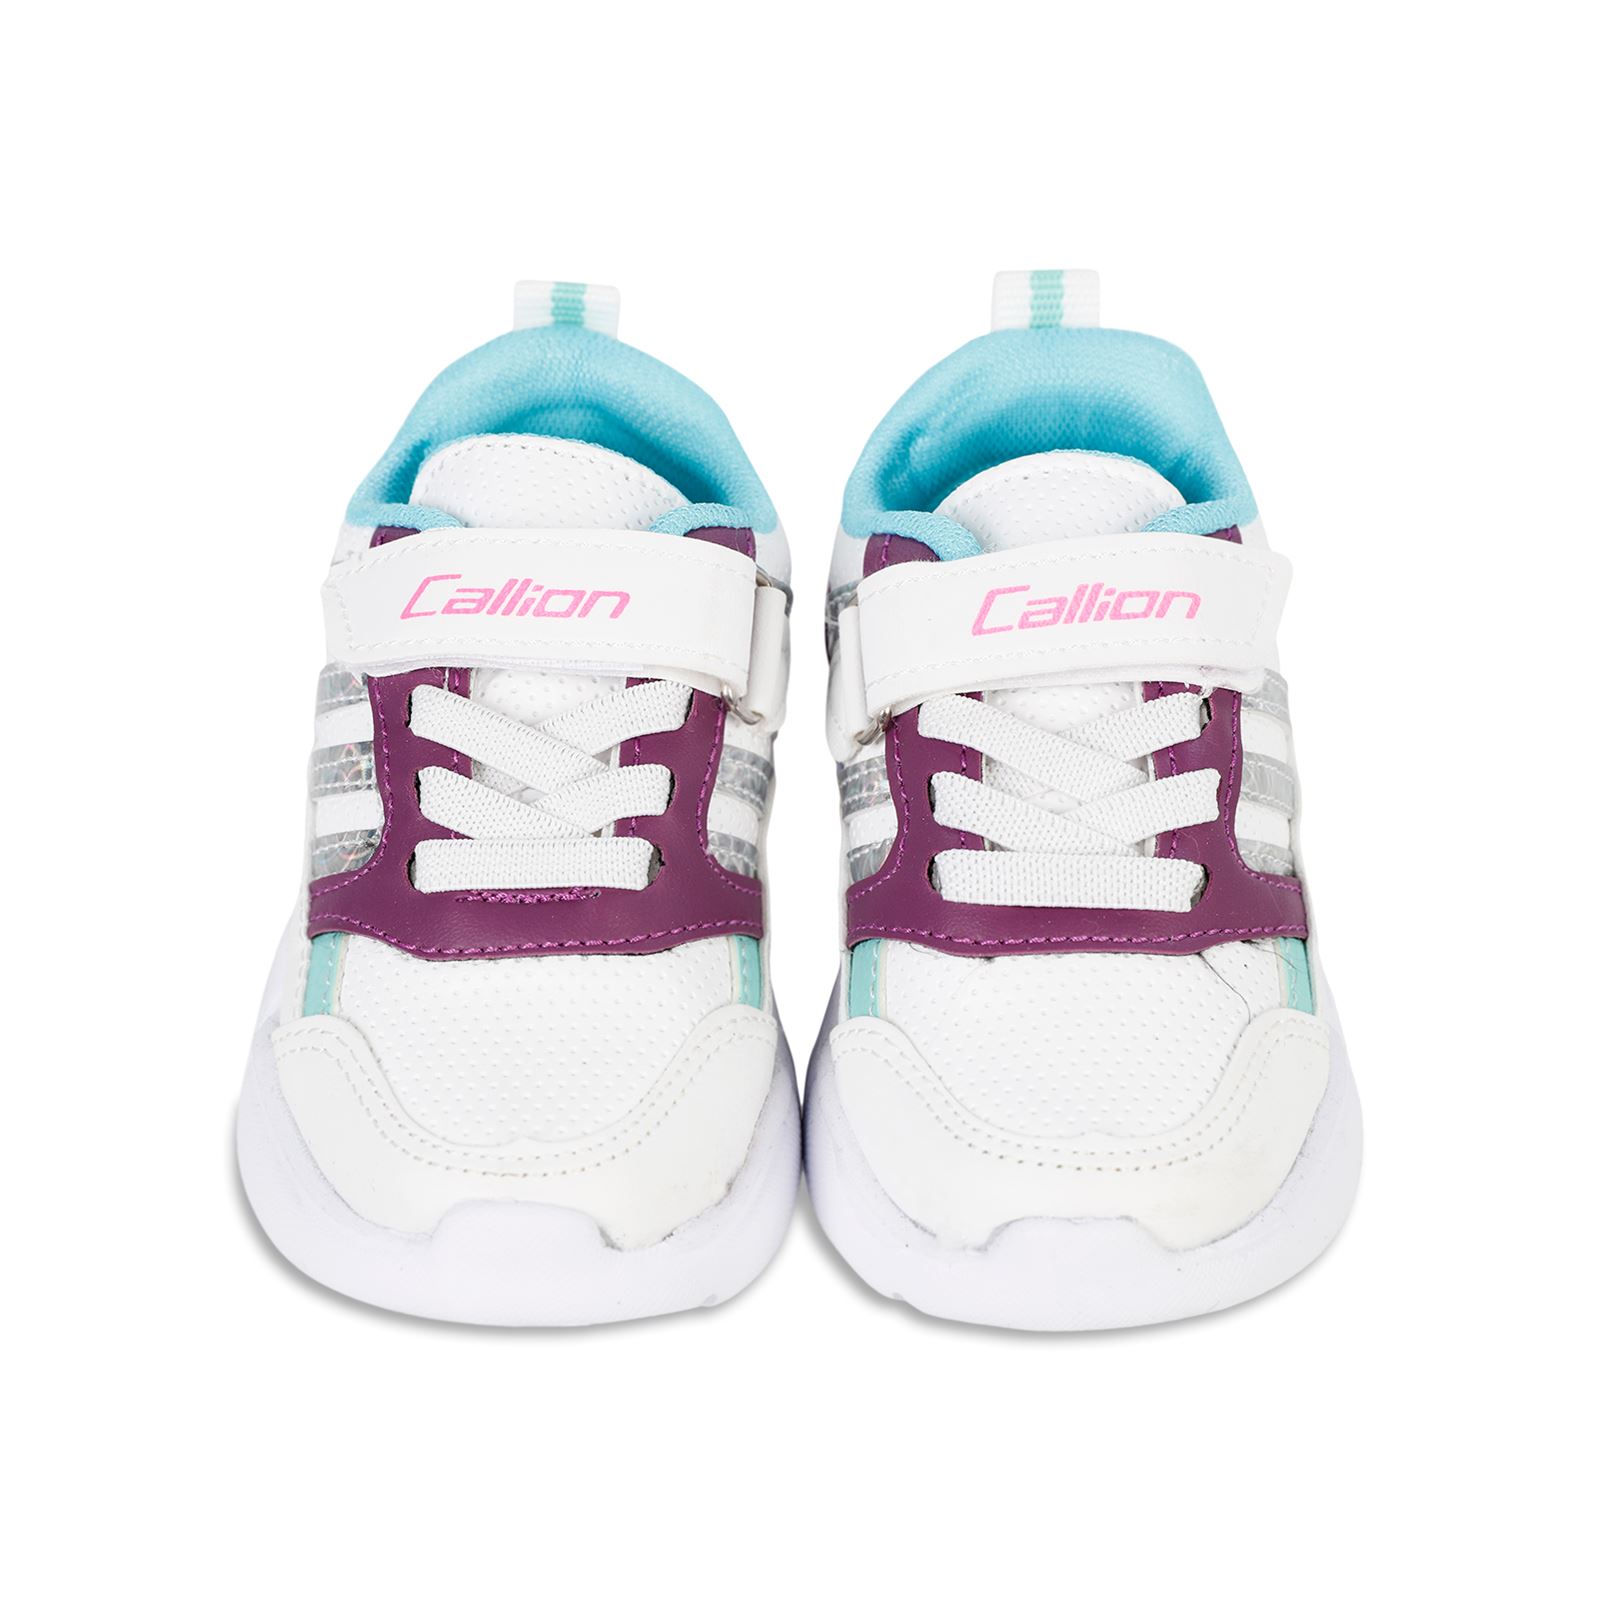 Callion Kız Çocuk Işıklı Spor Ayakkabı 22-25 Numara Beyaz-Mor